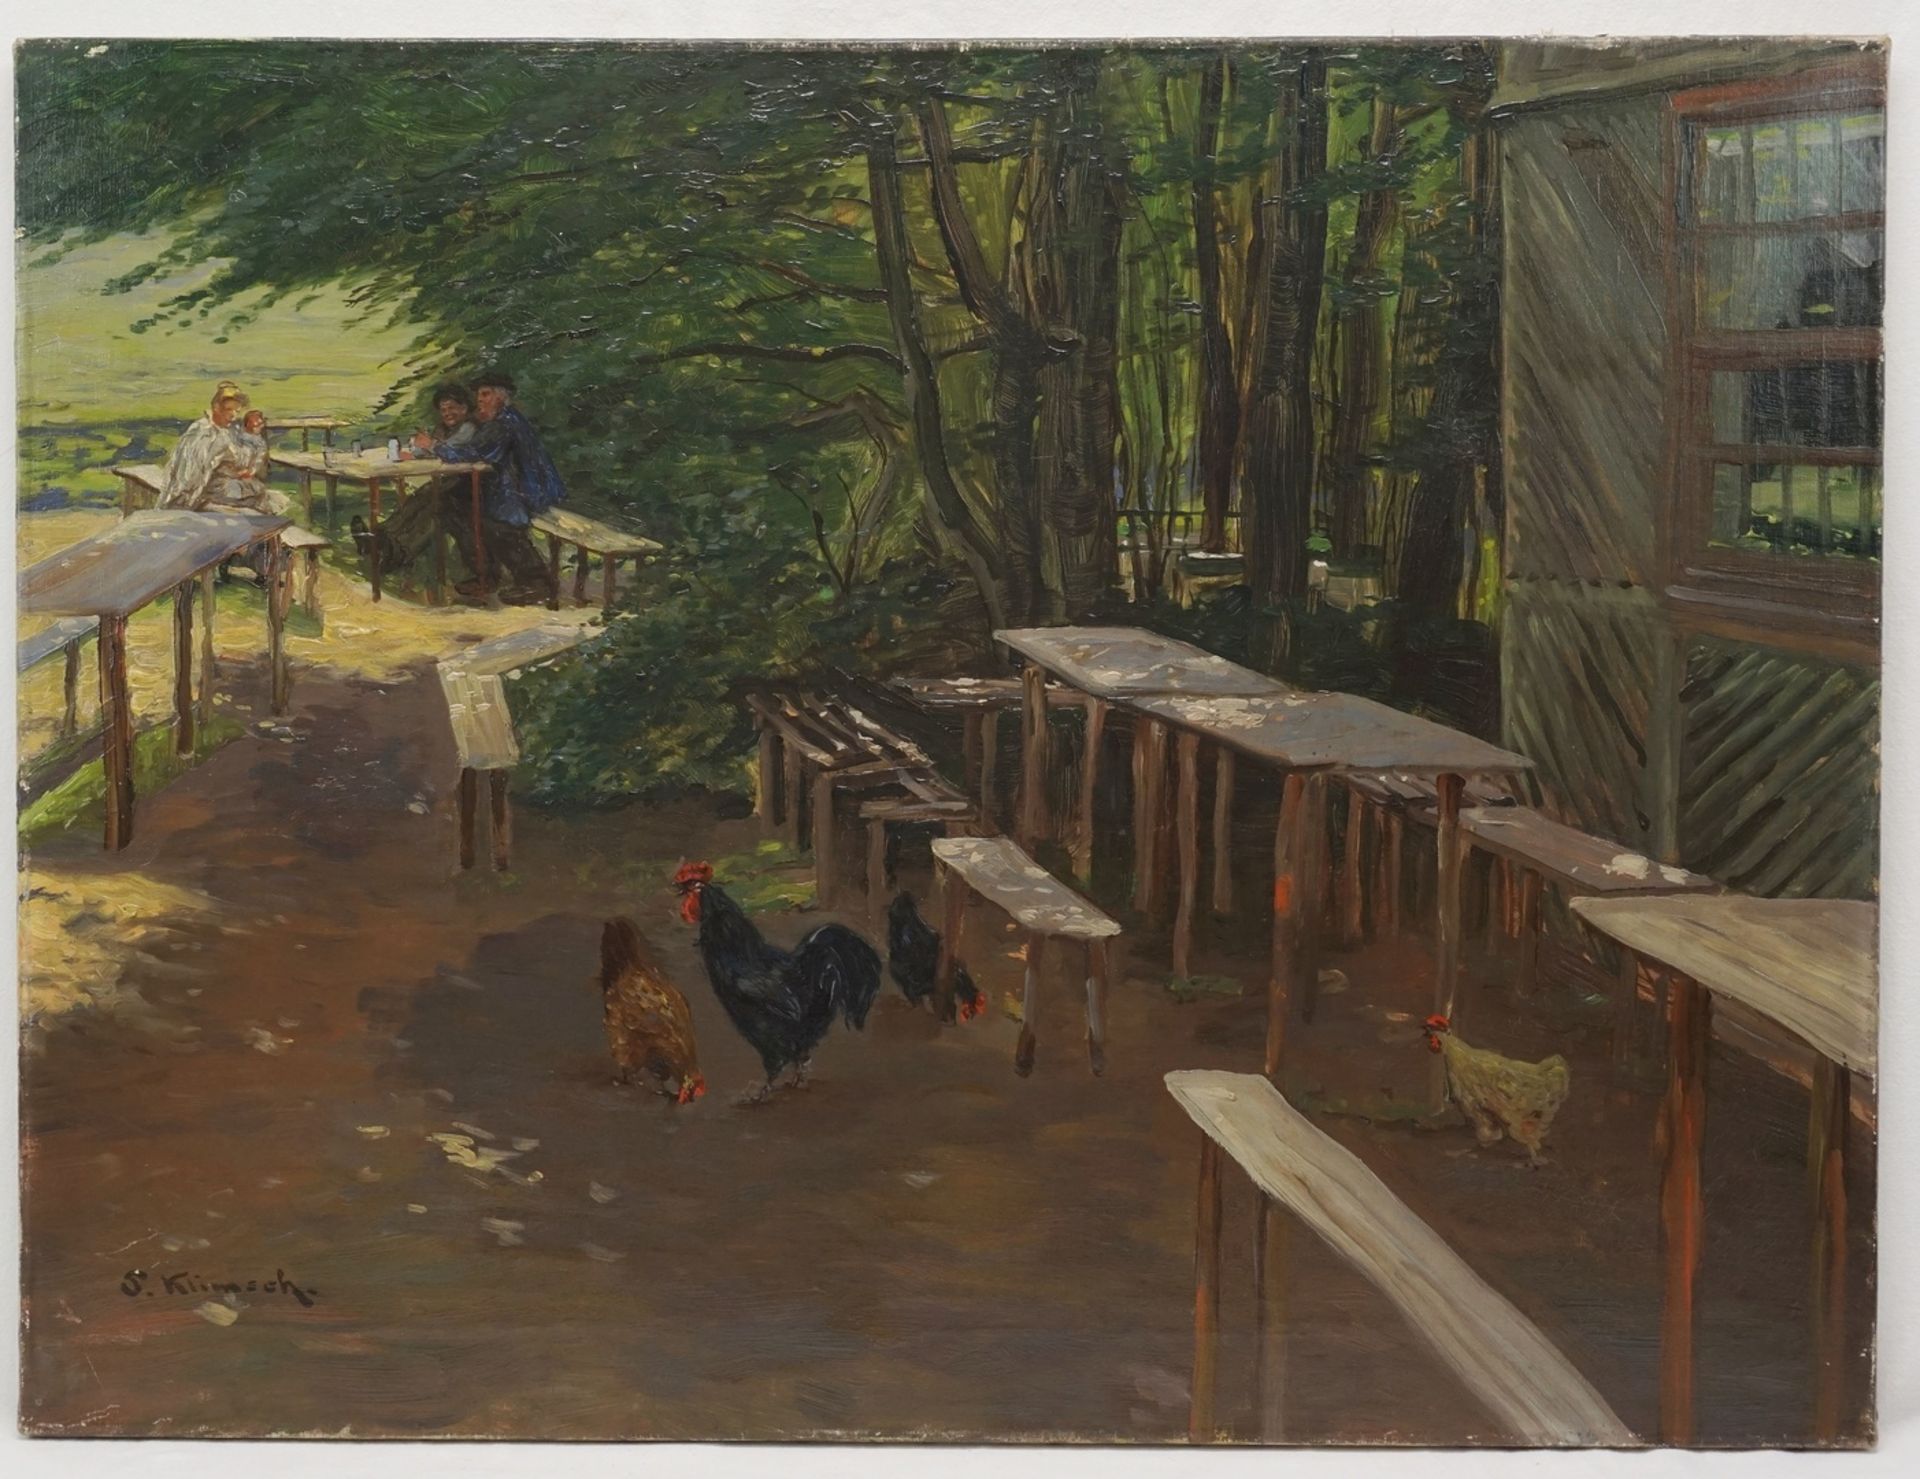 S. Klimsch, "Hühner auf dem Rastplatz"Öl/Leinwand, unten links signiert, leere Tische und Bänke, - Bild 2 aus 4